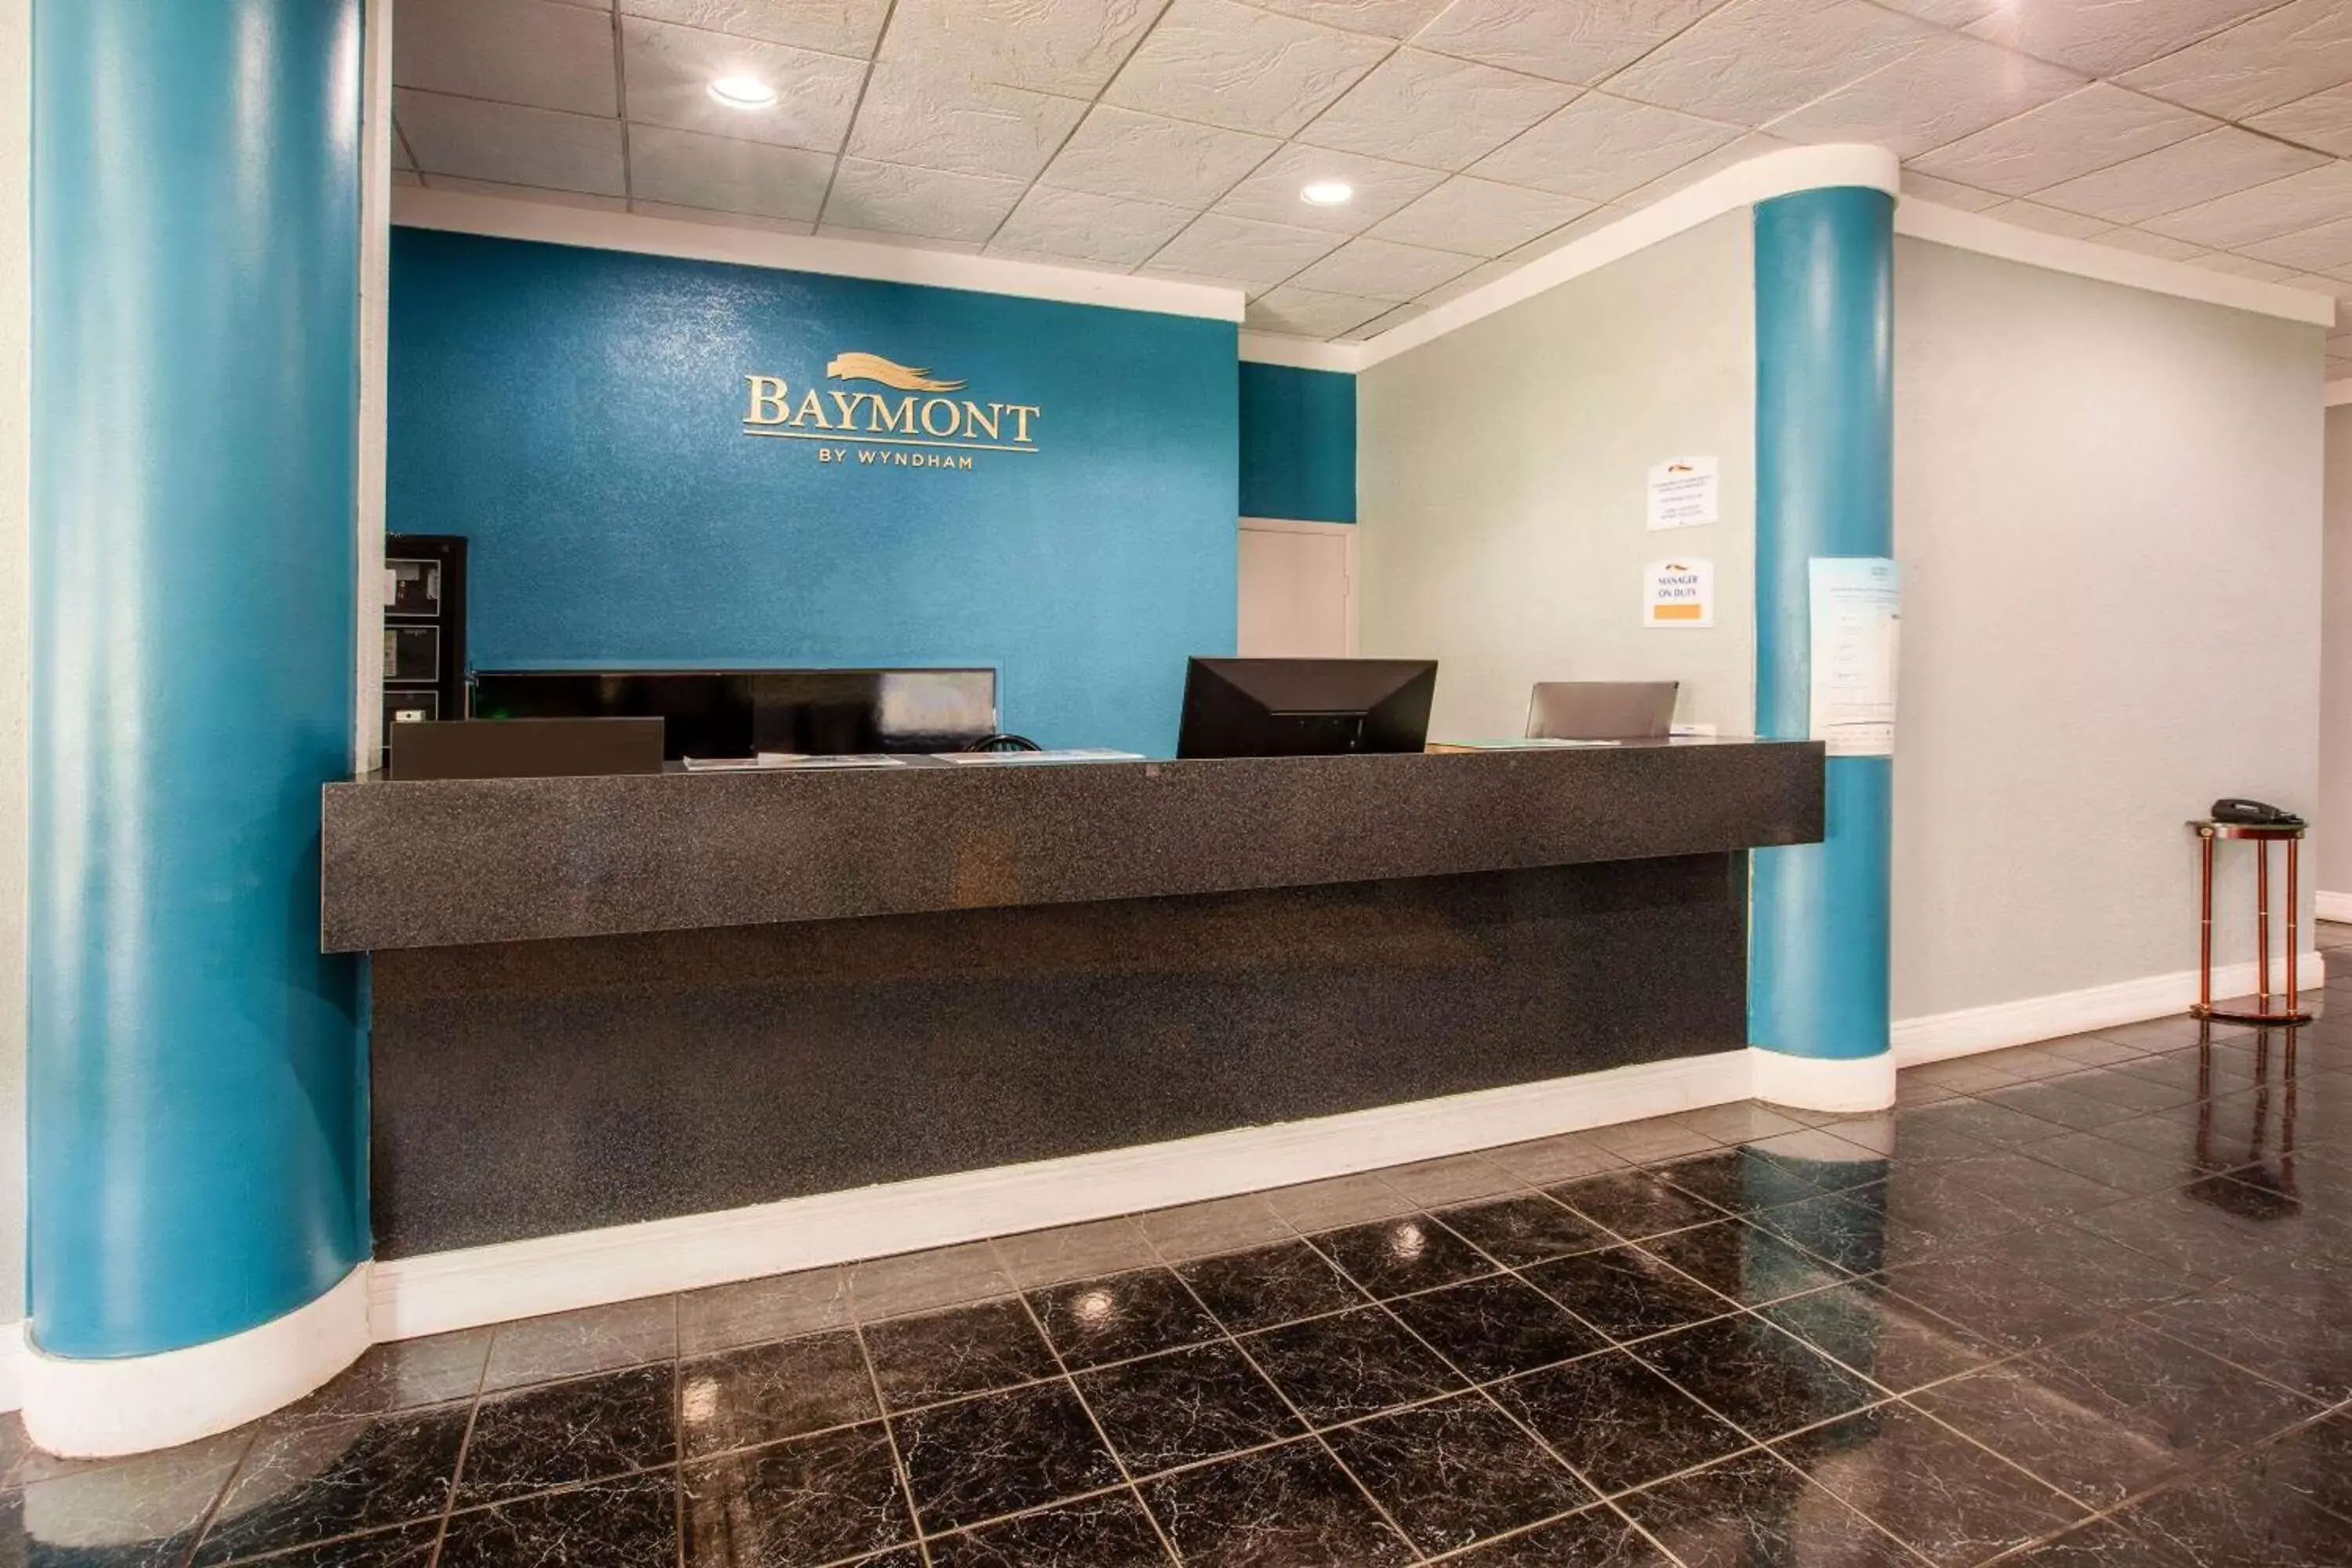 Lobby or reception, Lobby/Reception in Baymont by Wyndham Northwood